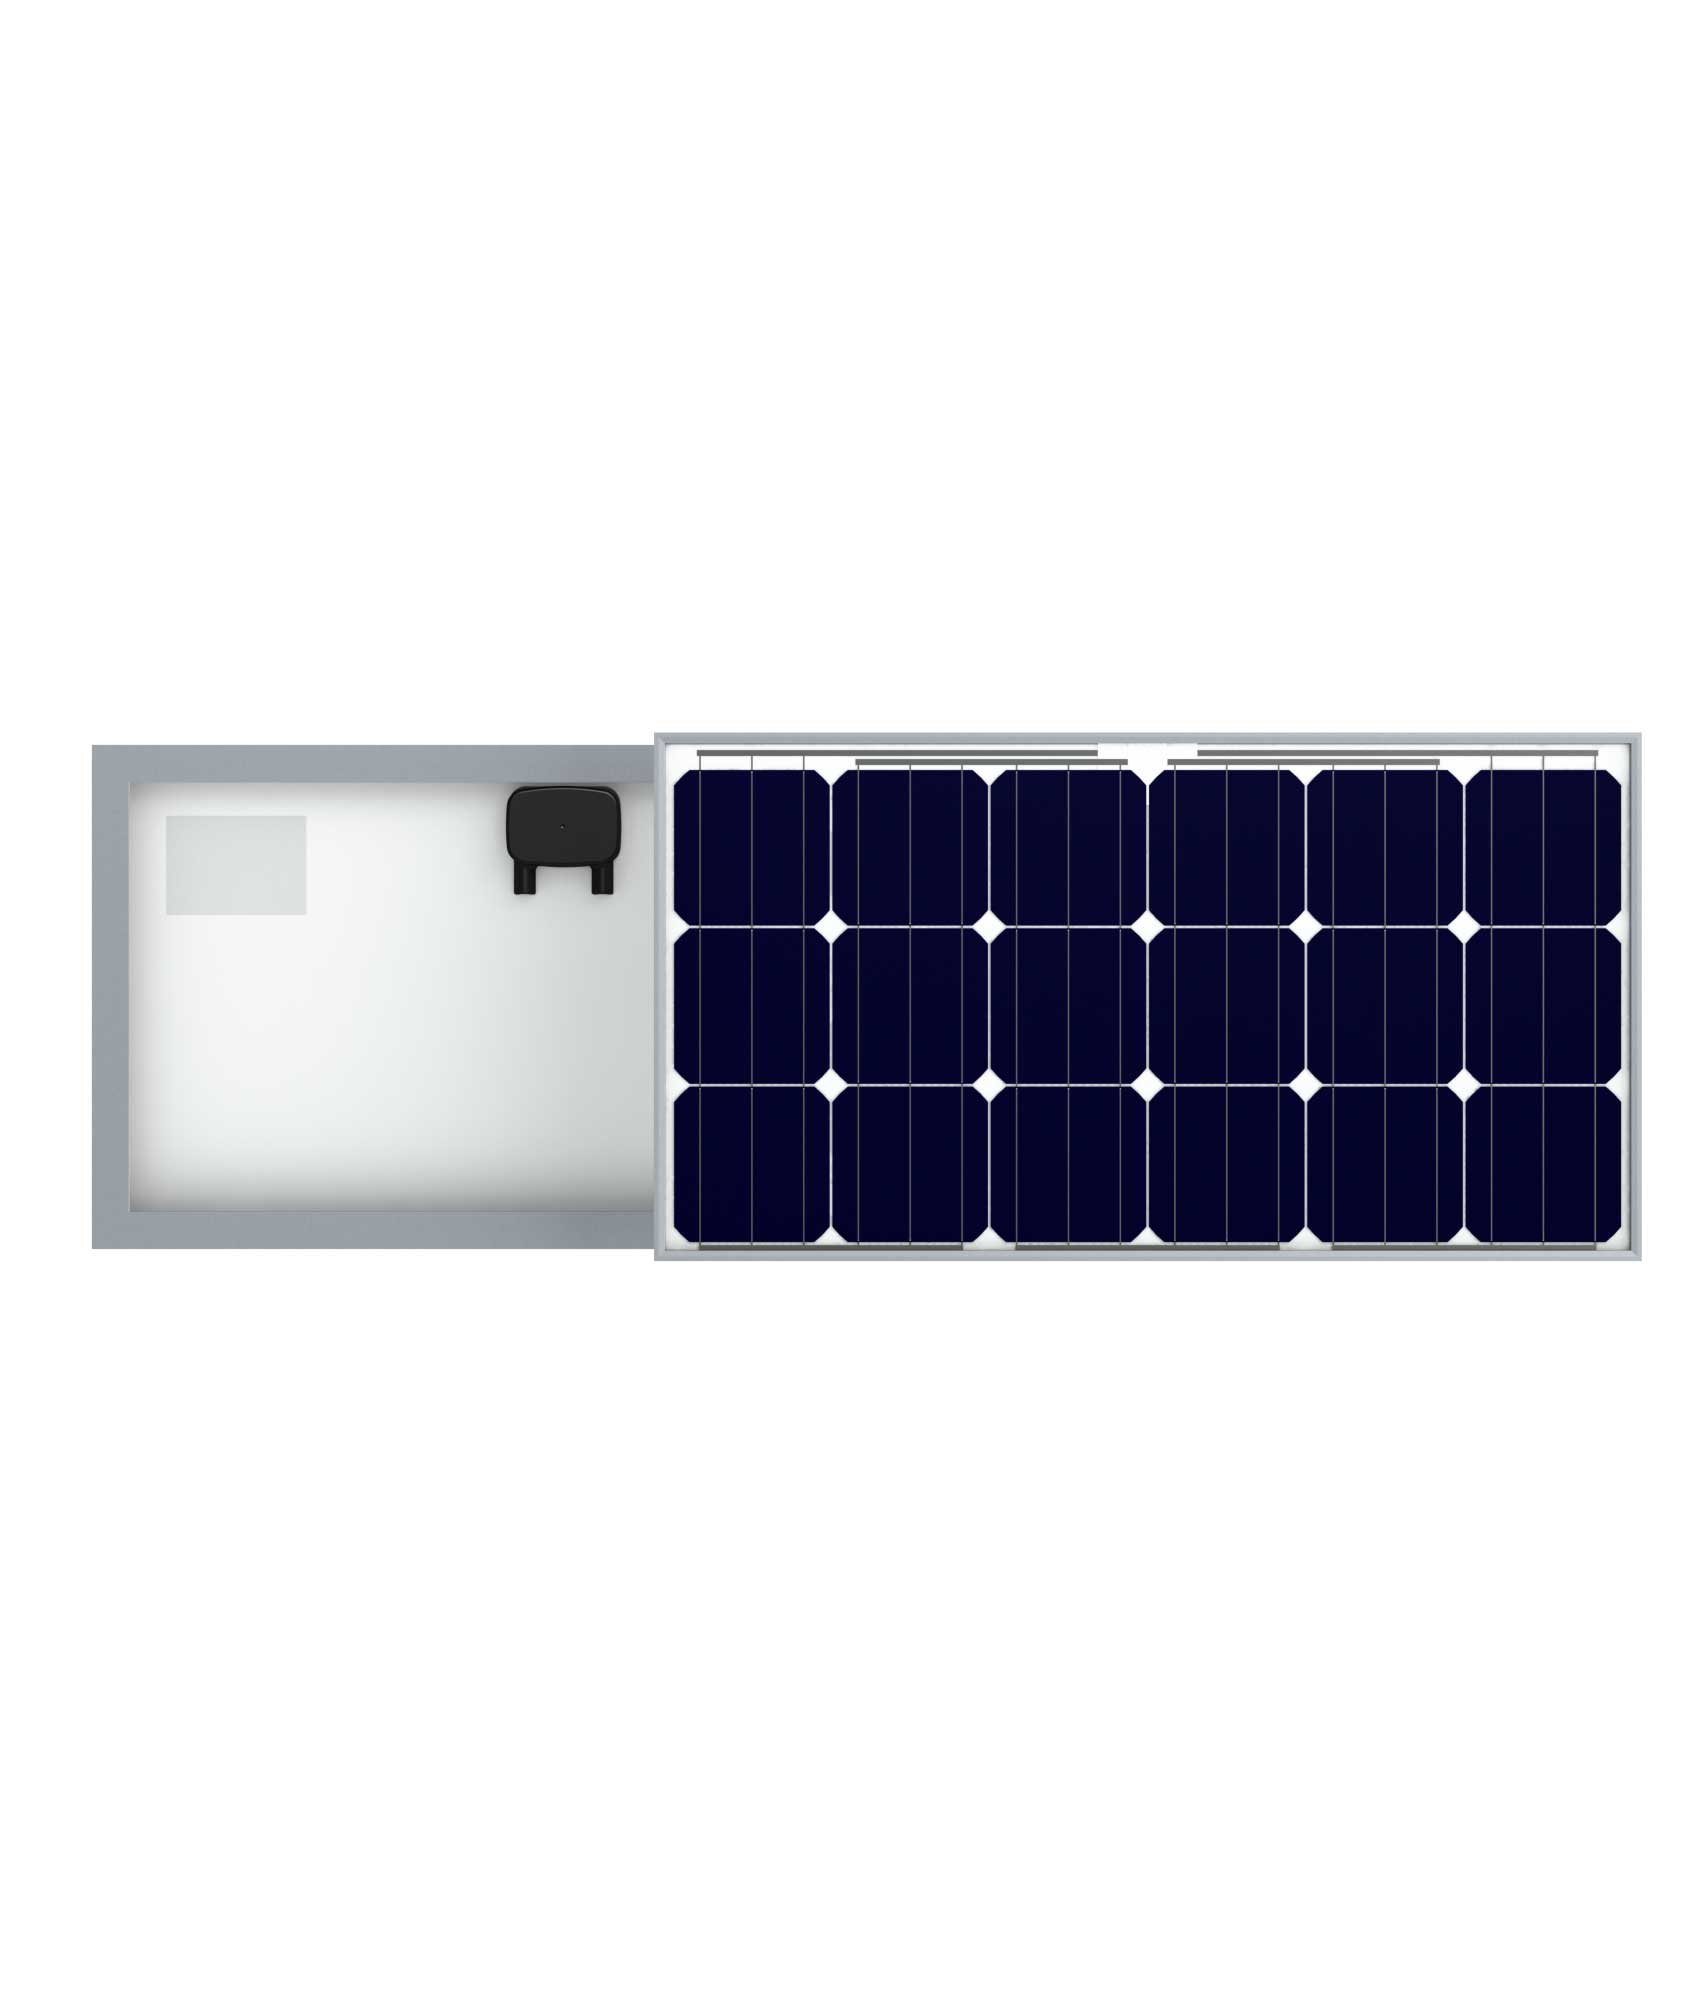 Солнечный фотоэлектрический модуль RZMP 18-75-M3W20